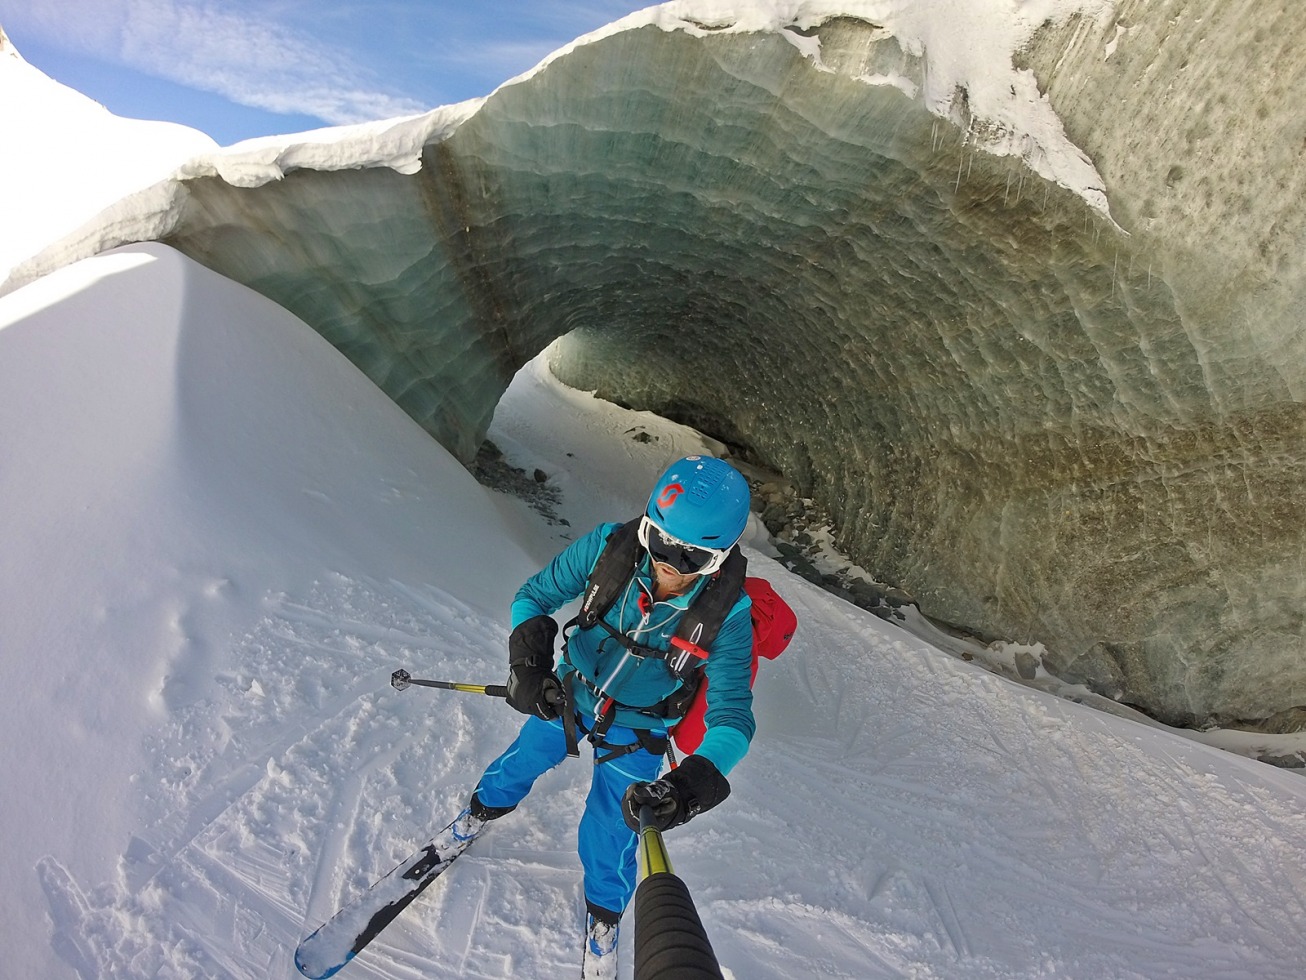 PORTA NERA 2018 [Freeride / Skialp deluxe tra Cervinia e Zermatt] |  SkiForum - Sci, turismo, sport e passione